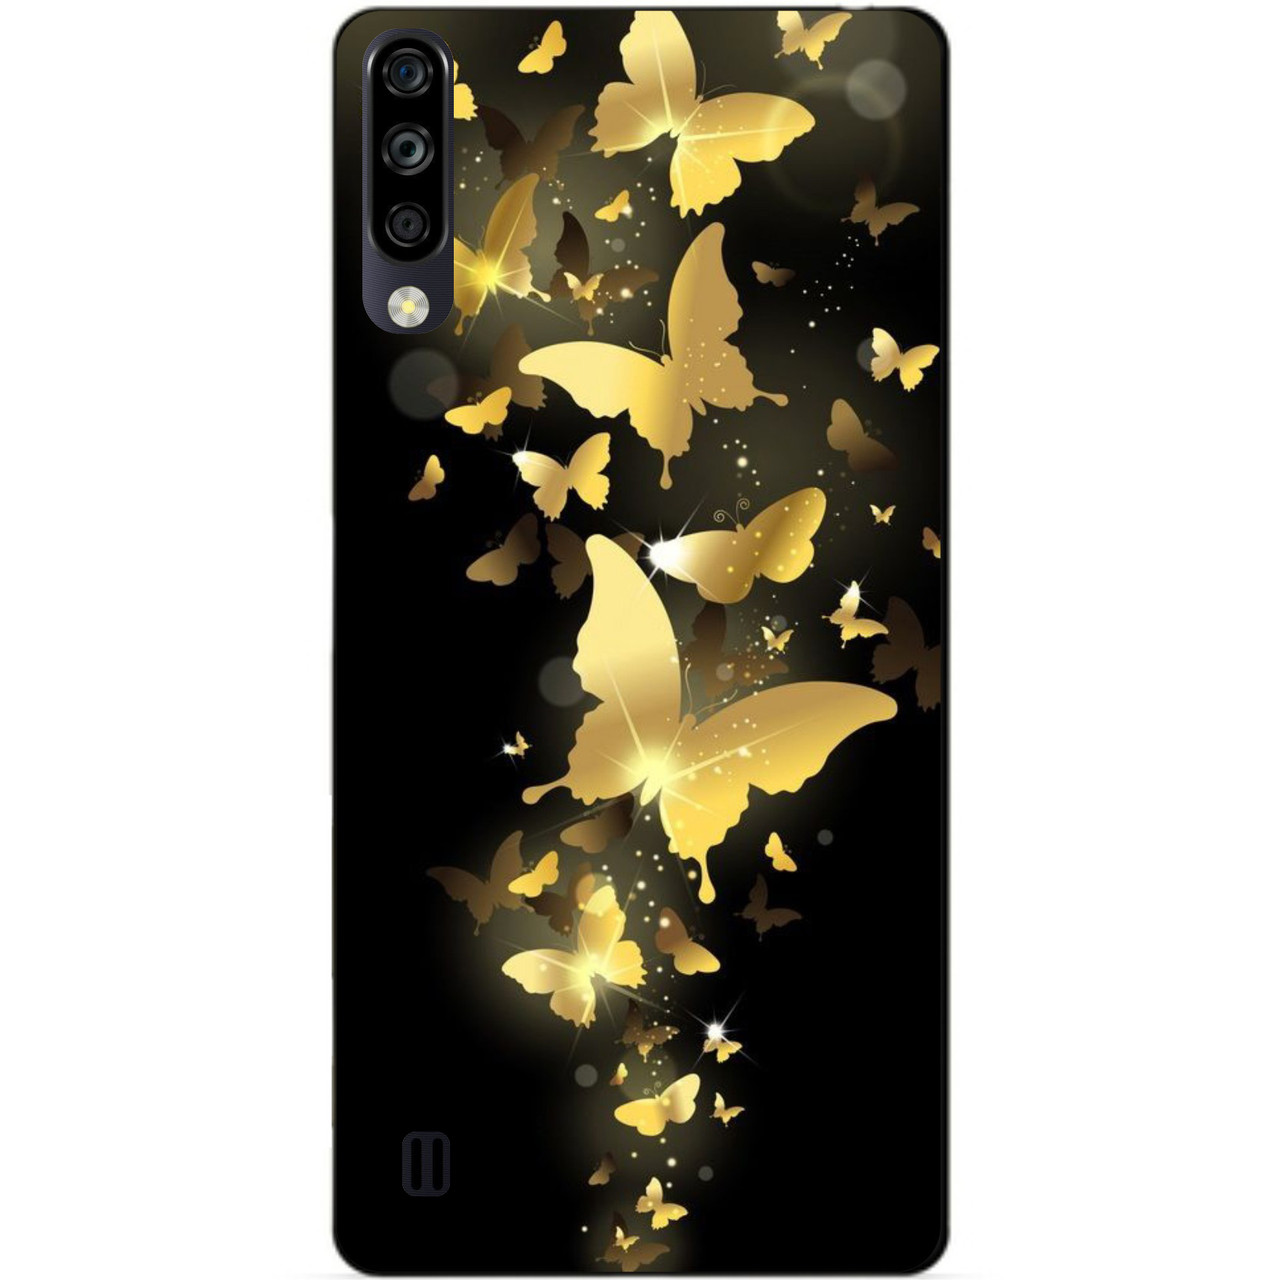 

Силиконовый чехол бампер для ZTE Blade A7 2020 с рисунком Золотые бабочки, Разные цвета